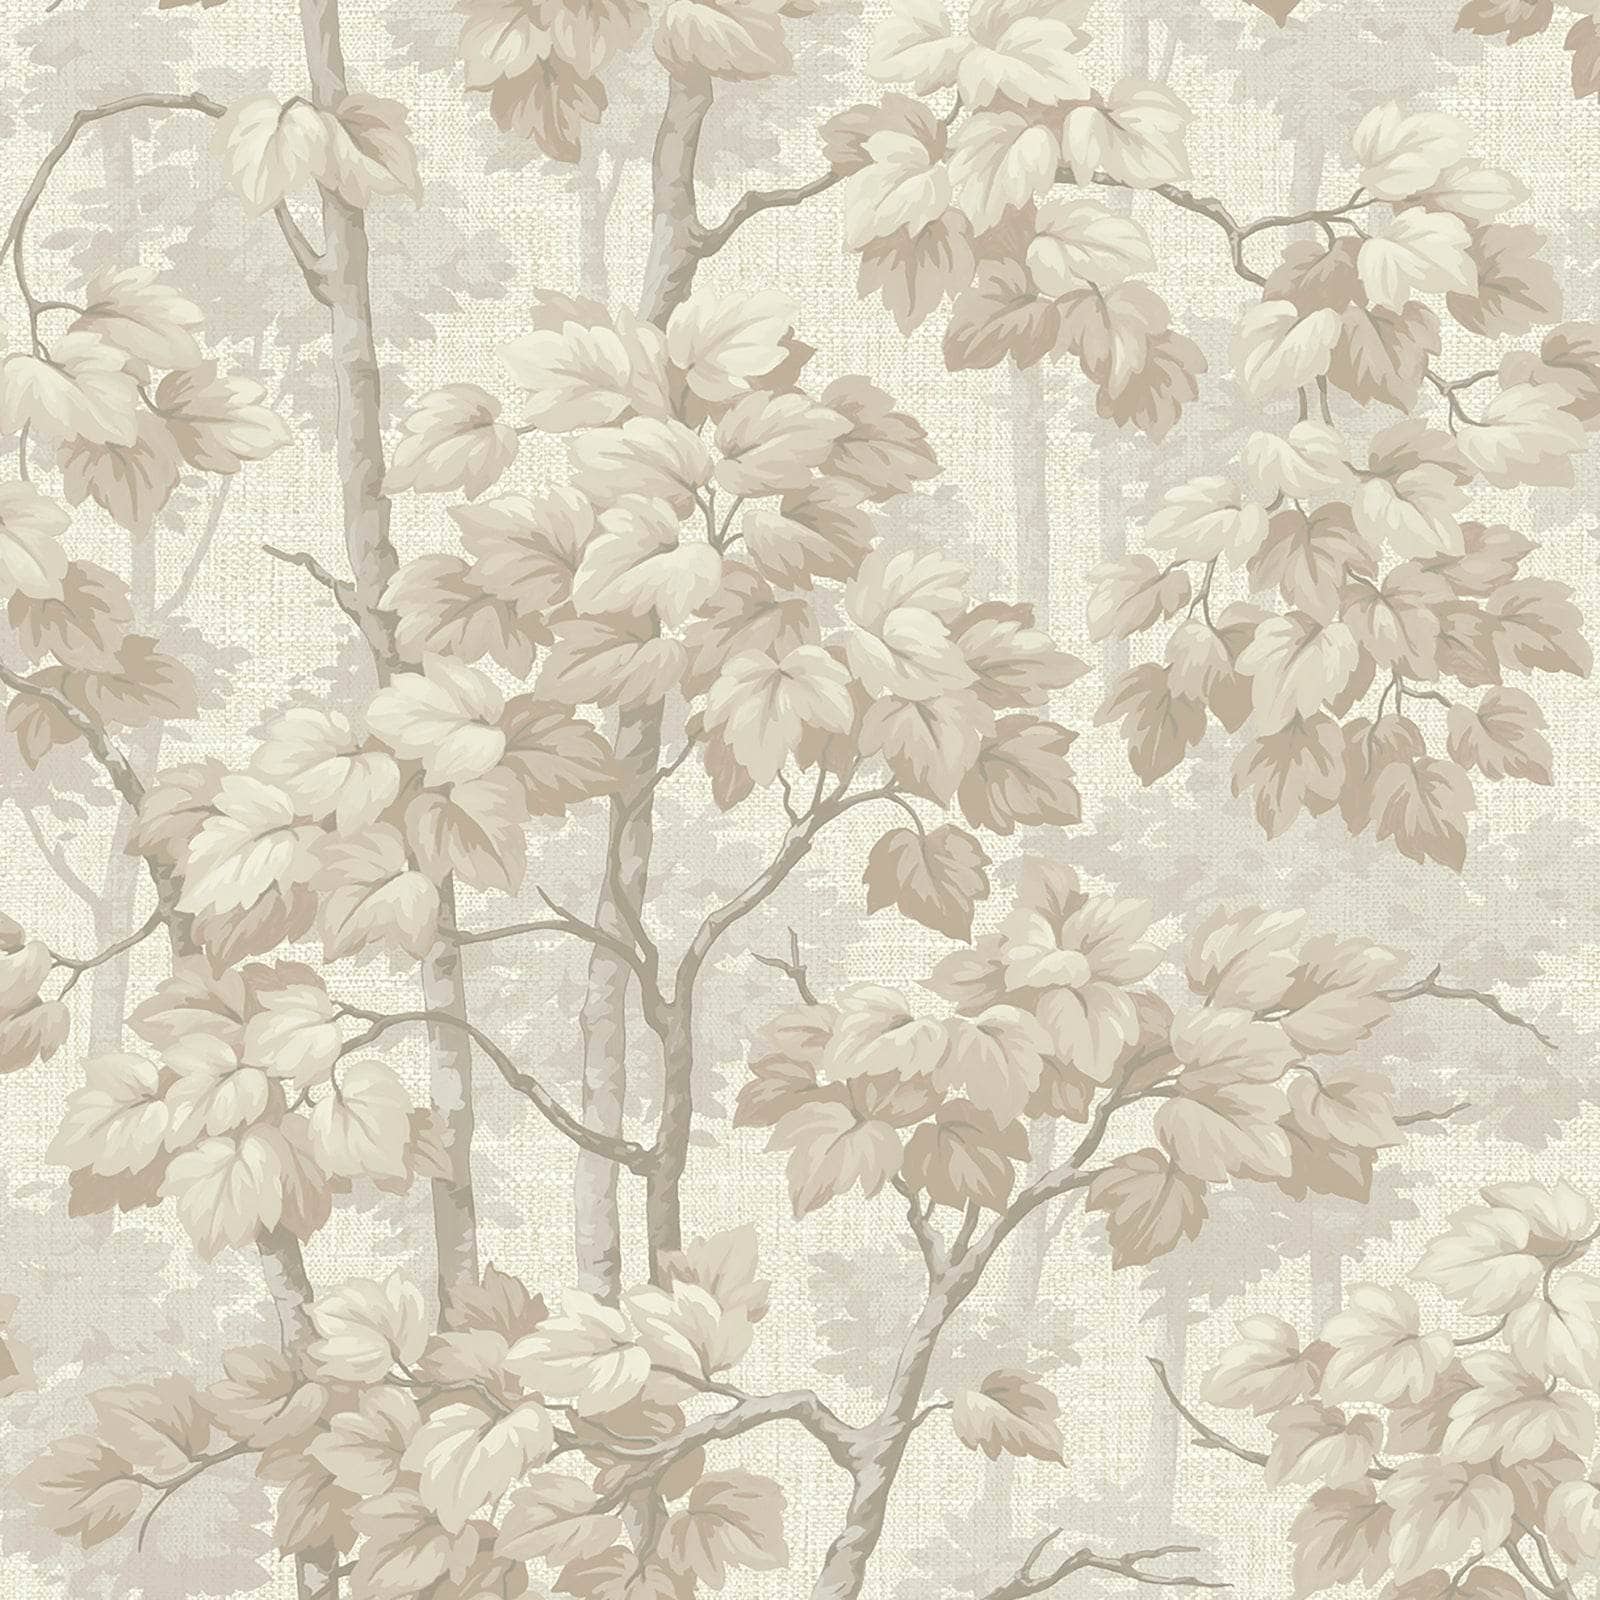 Wallpaper  -  Belgravia Giorgio Beige Tree Wallpaper - 60005532  -  60005532